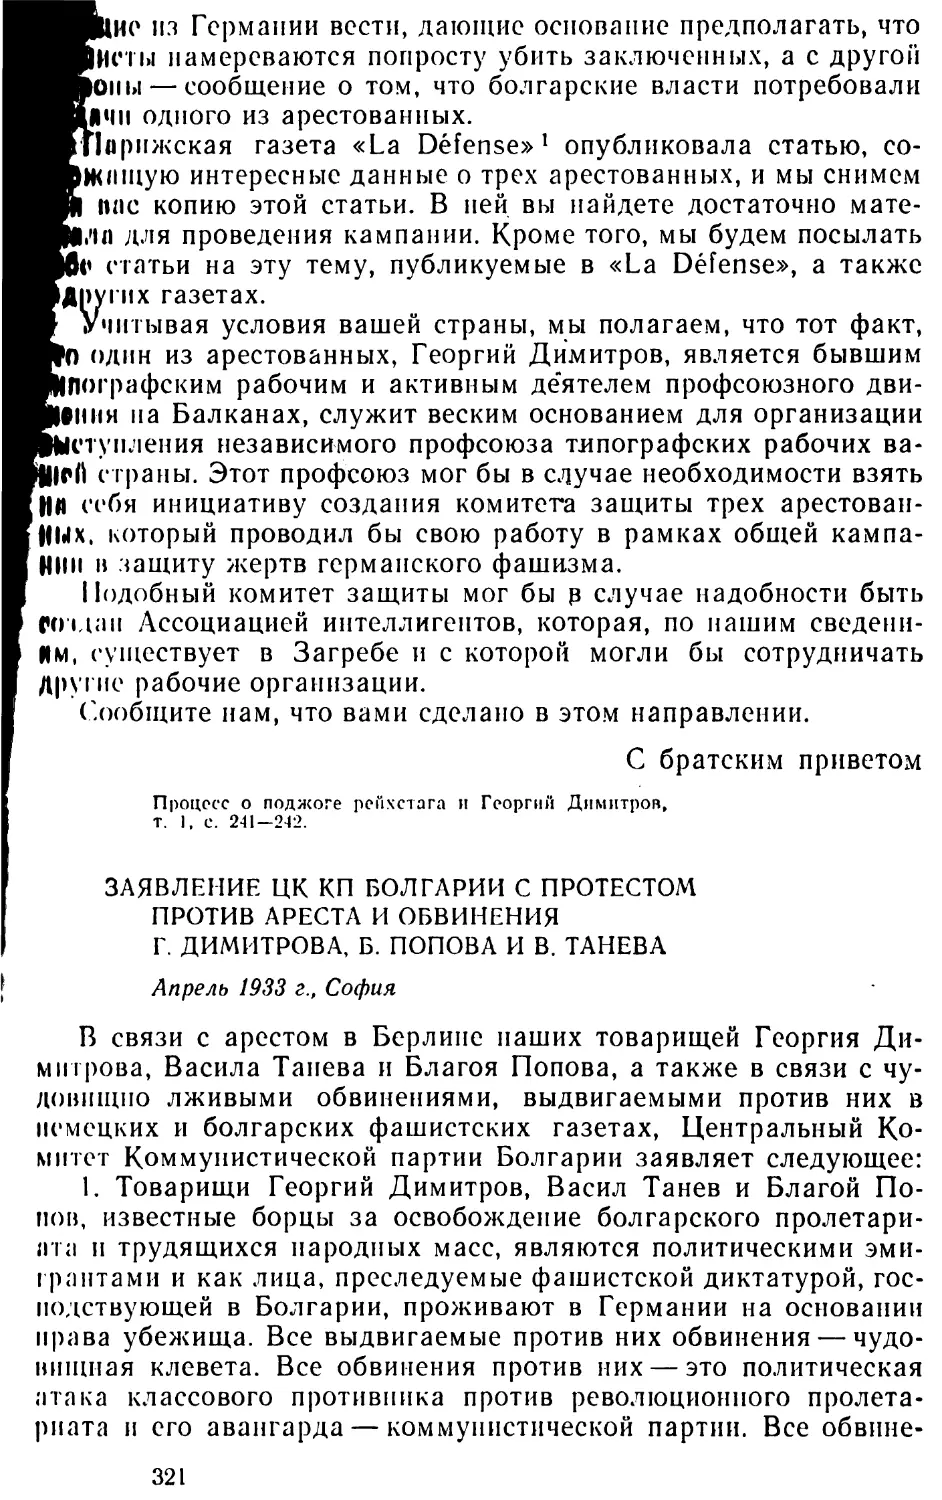 Заявление ЦК КП Болгарии с протестом против ареста и обвинения Г. Димитрова, Б. Попова и В. Танева. Апрель 1933 г